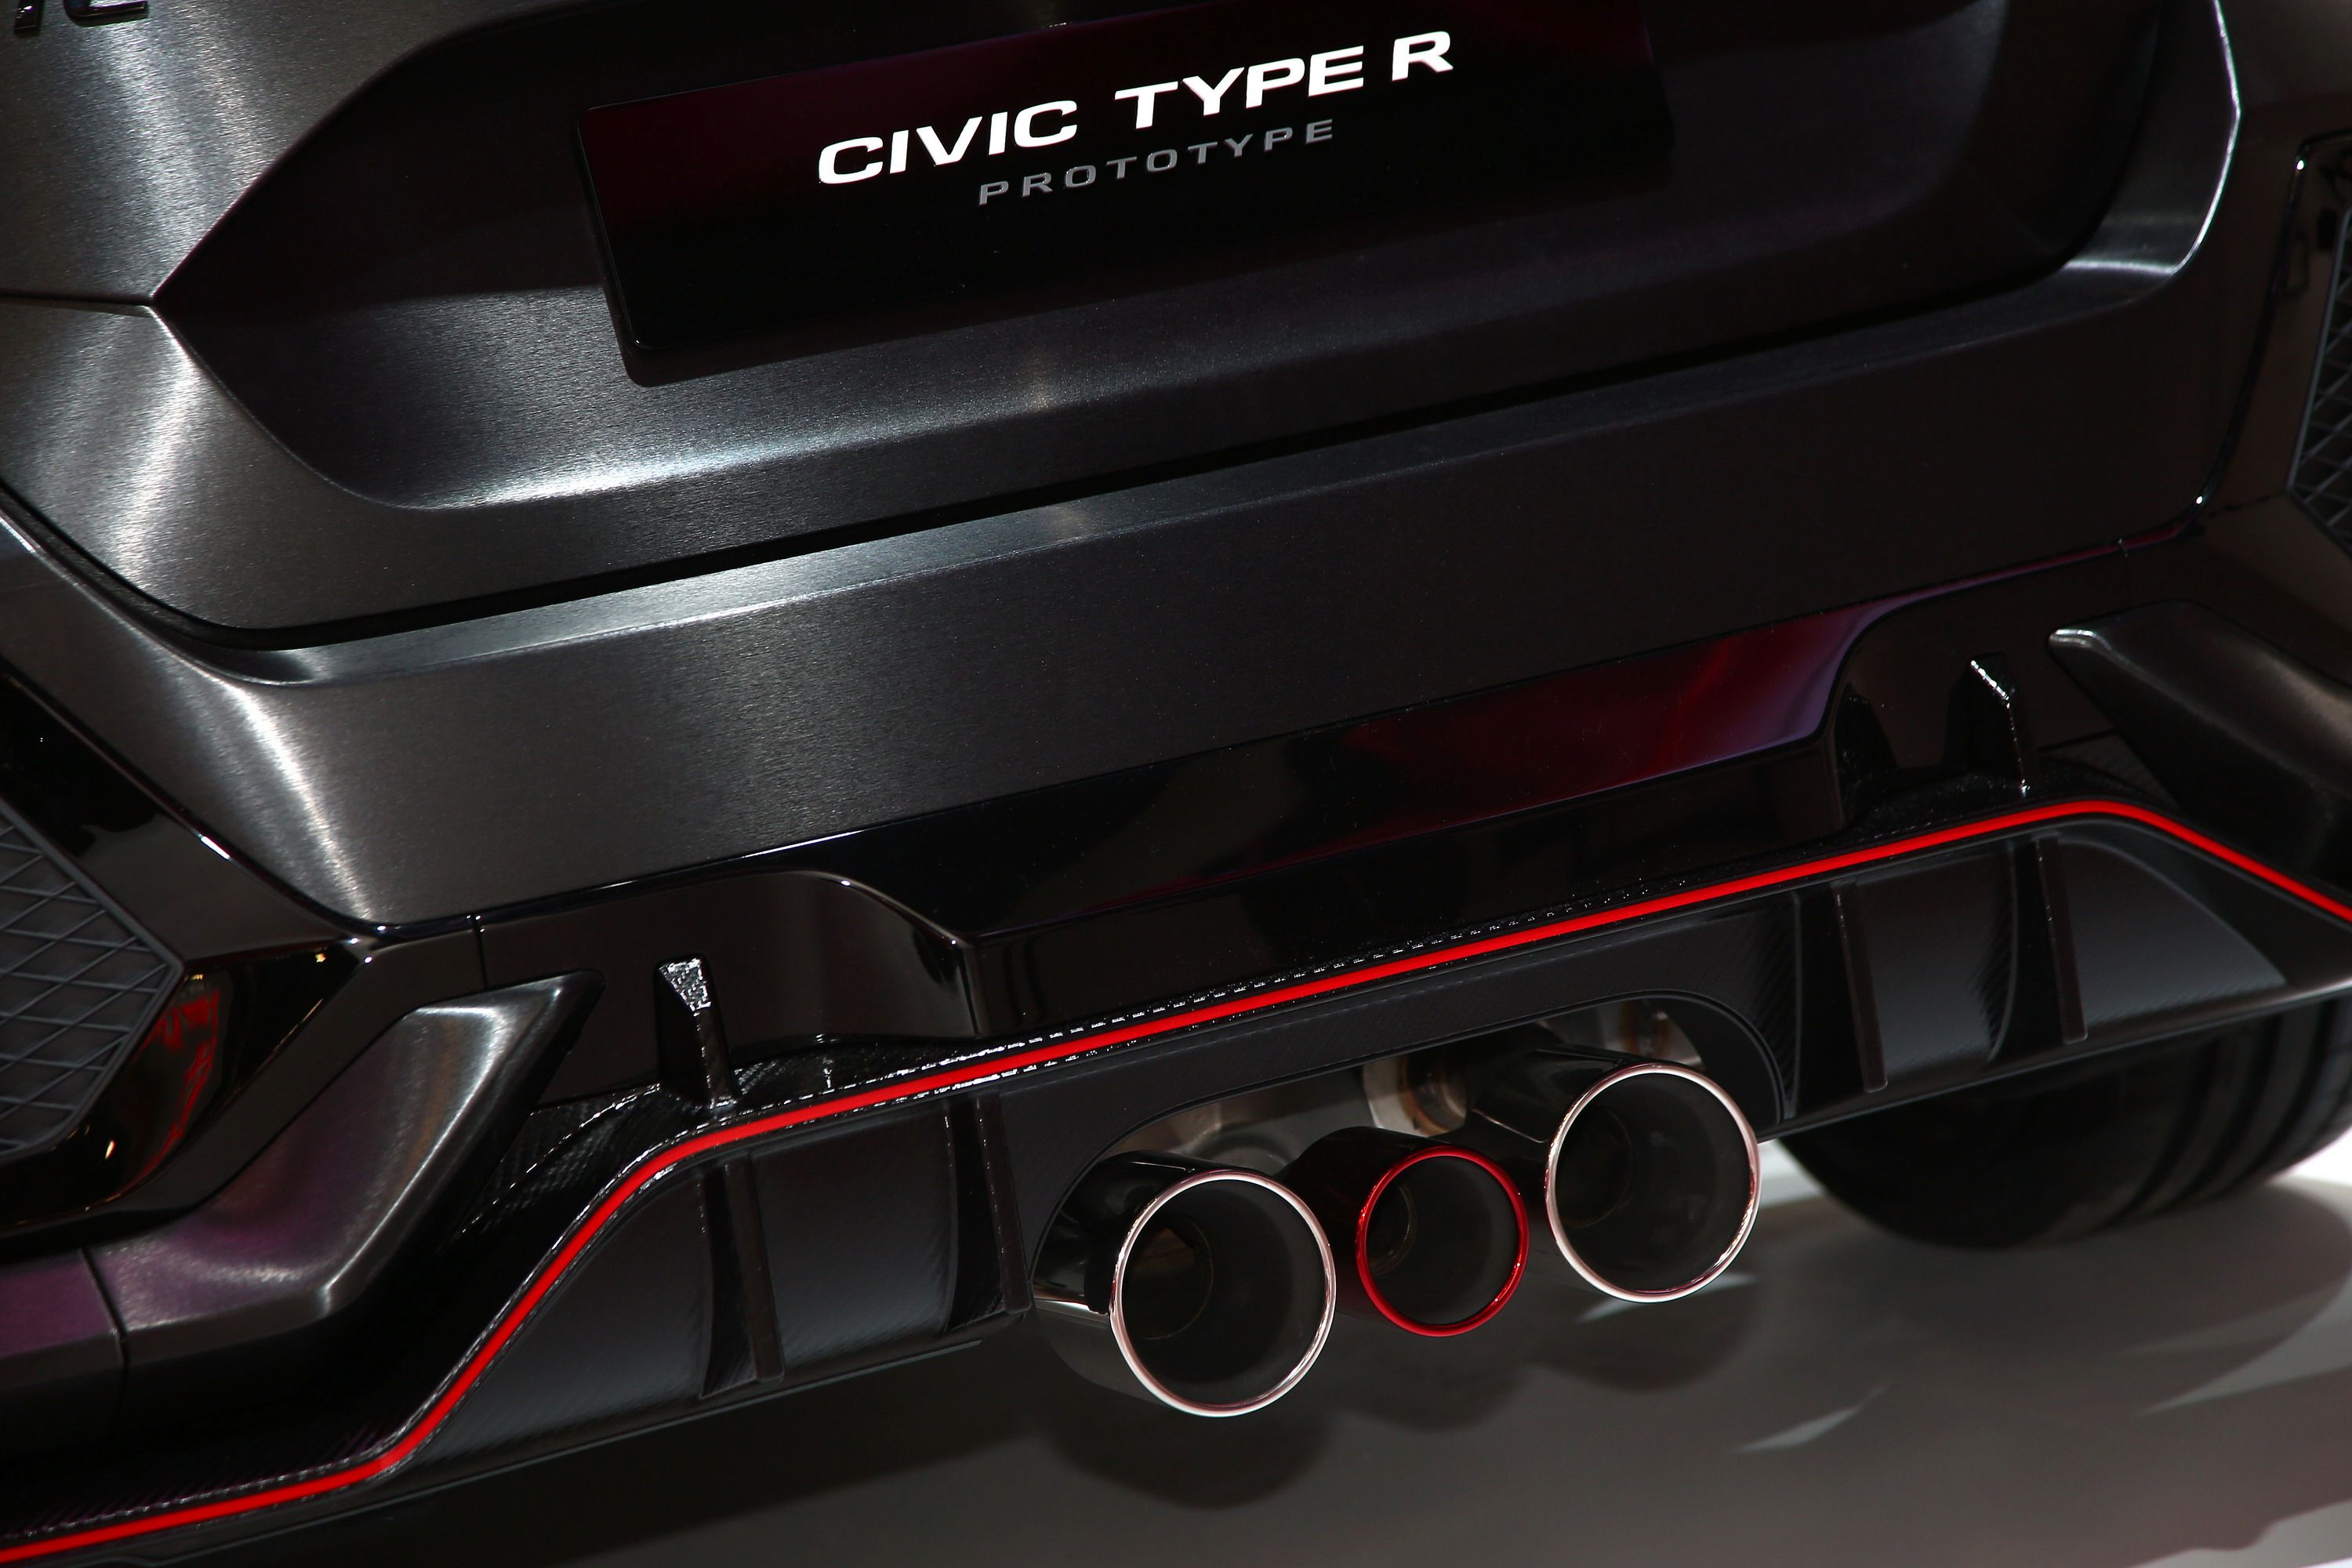 2016 Honda Civic Type R Concept